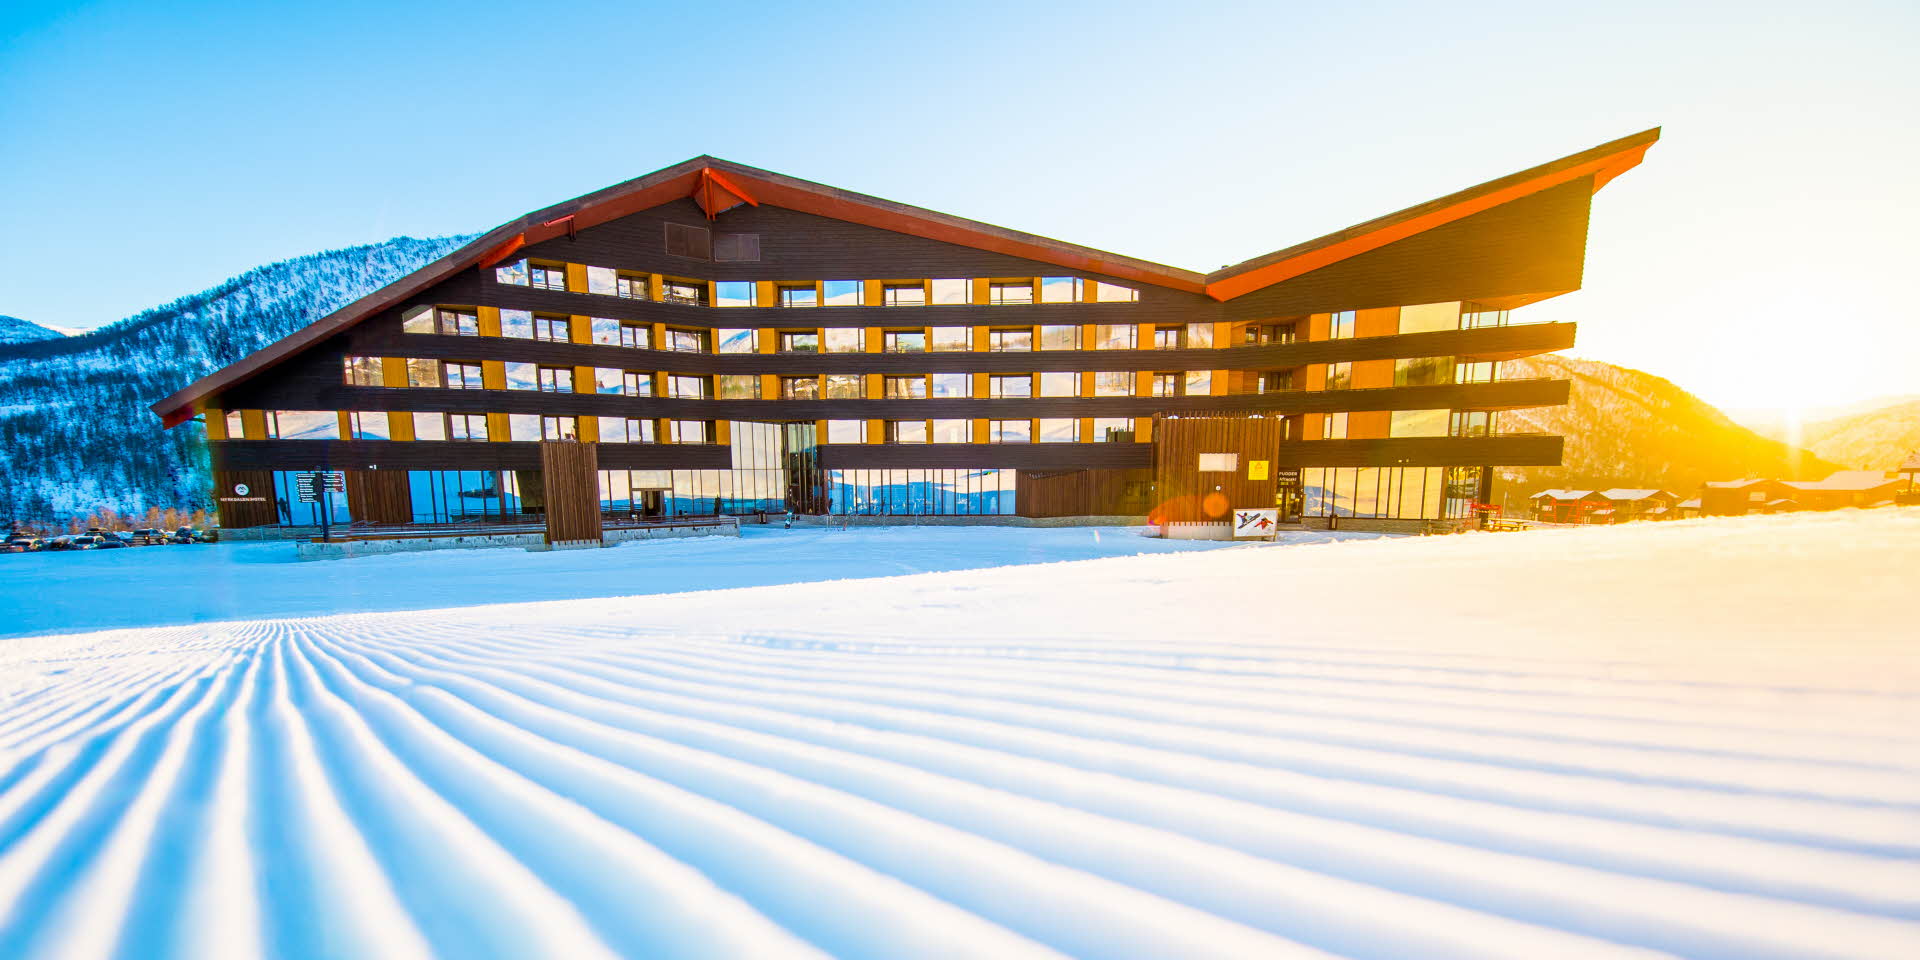 Le Myrkdalen Hotel vu des pistes en hiver